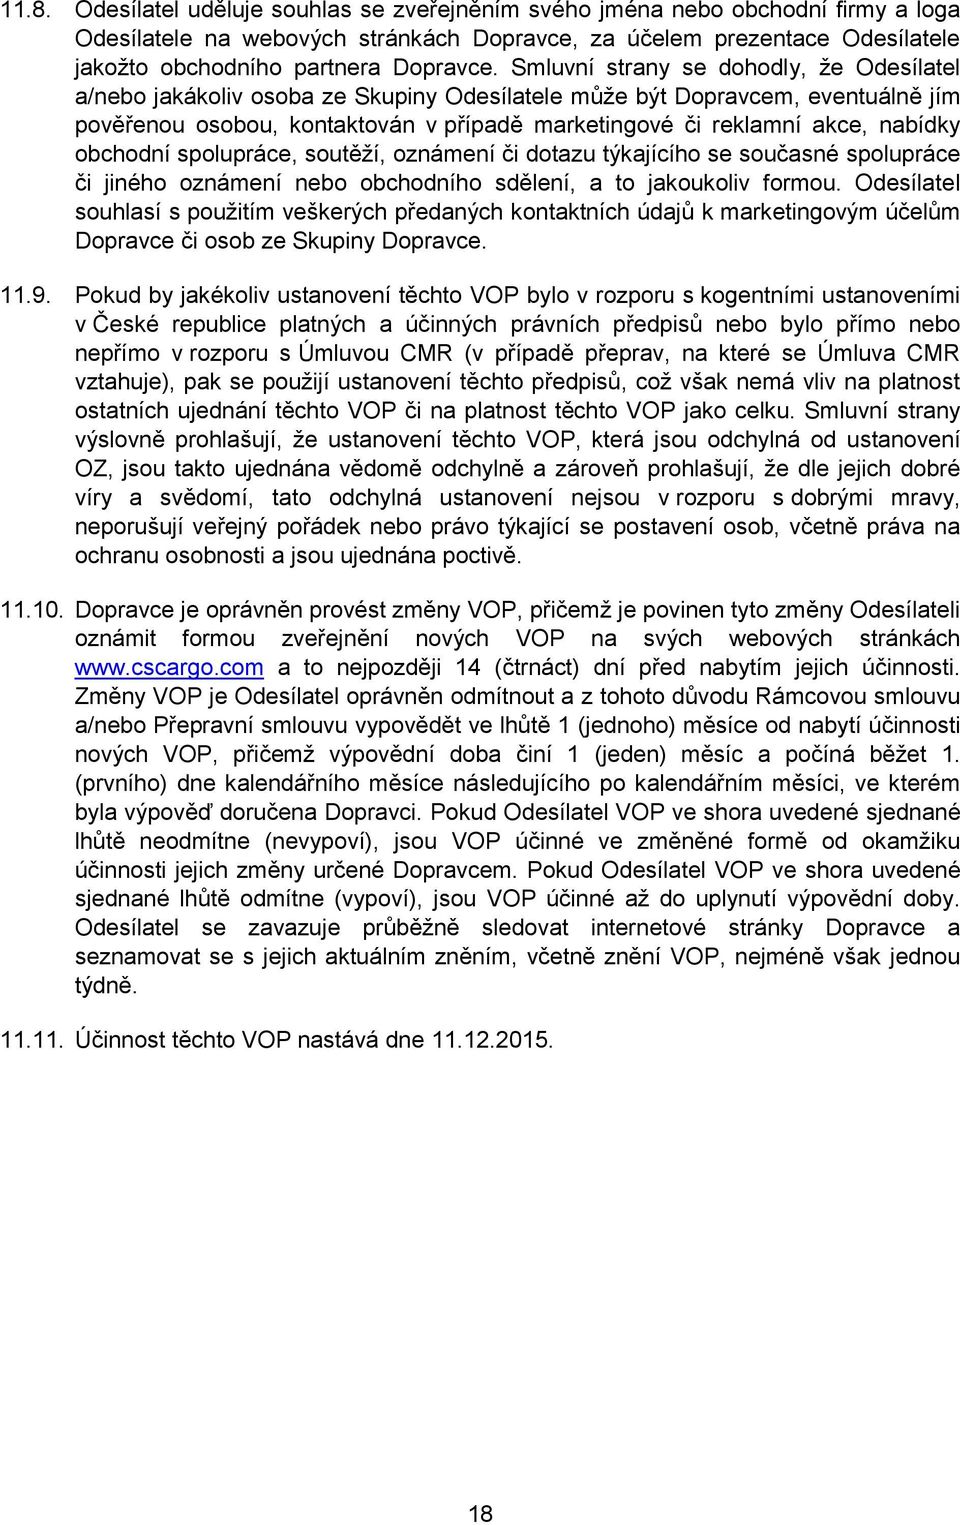 Smluvní strany se dohodly, že Odesílatel a/nebo jakákoliv osoba ze Skupiny Odesílatele může být Dopravcem, eventuálně jím pověřenou osobou, kontaktován v případě marketingové či reklamní akce,